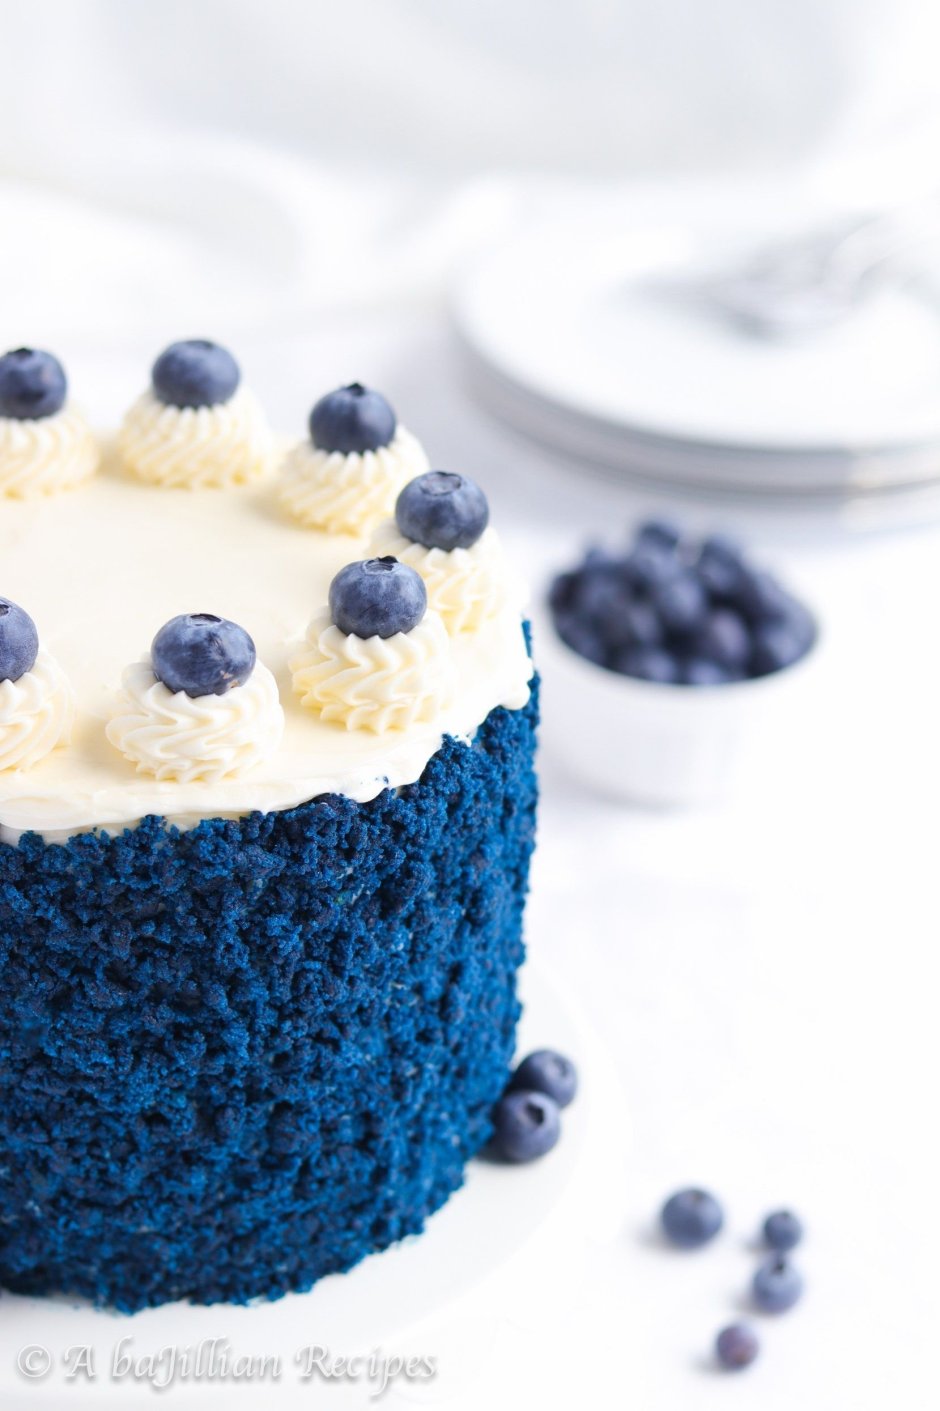 Торт кремовый синий